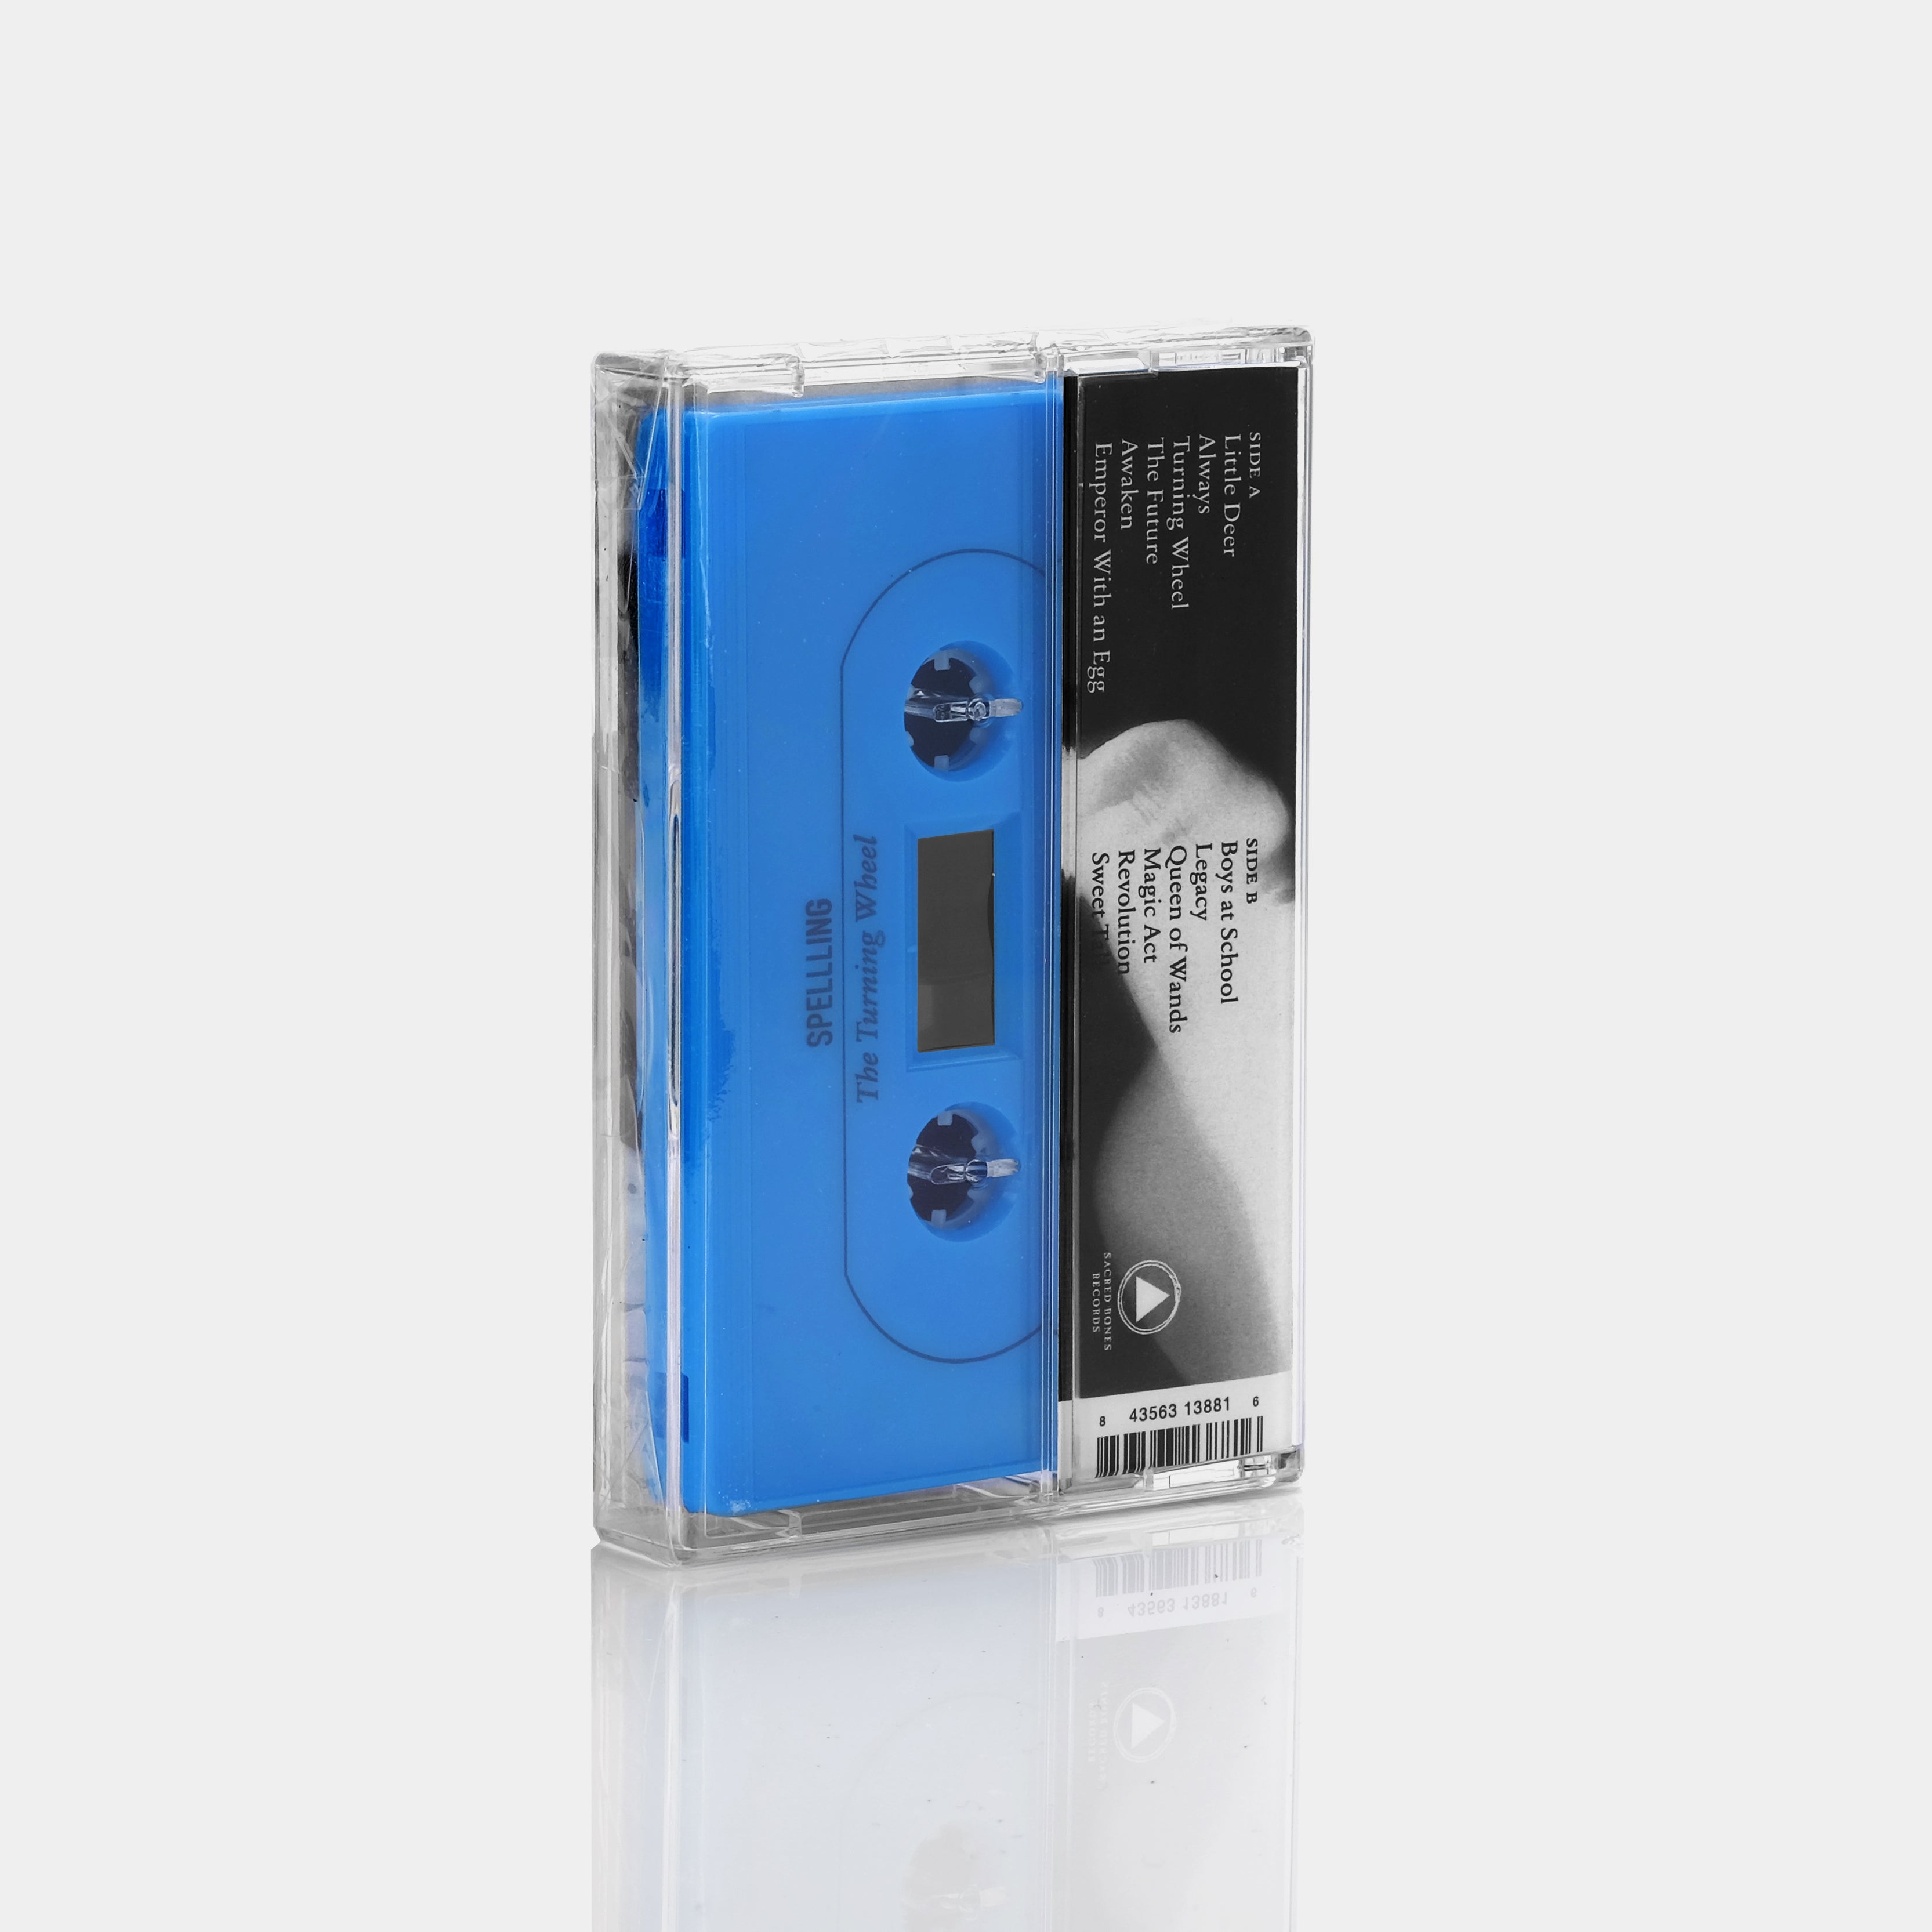 Spellling - The Turning Wheel Cassette Tape